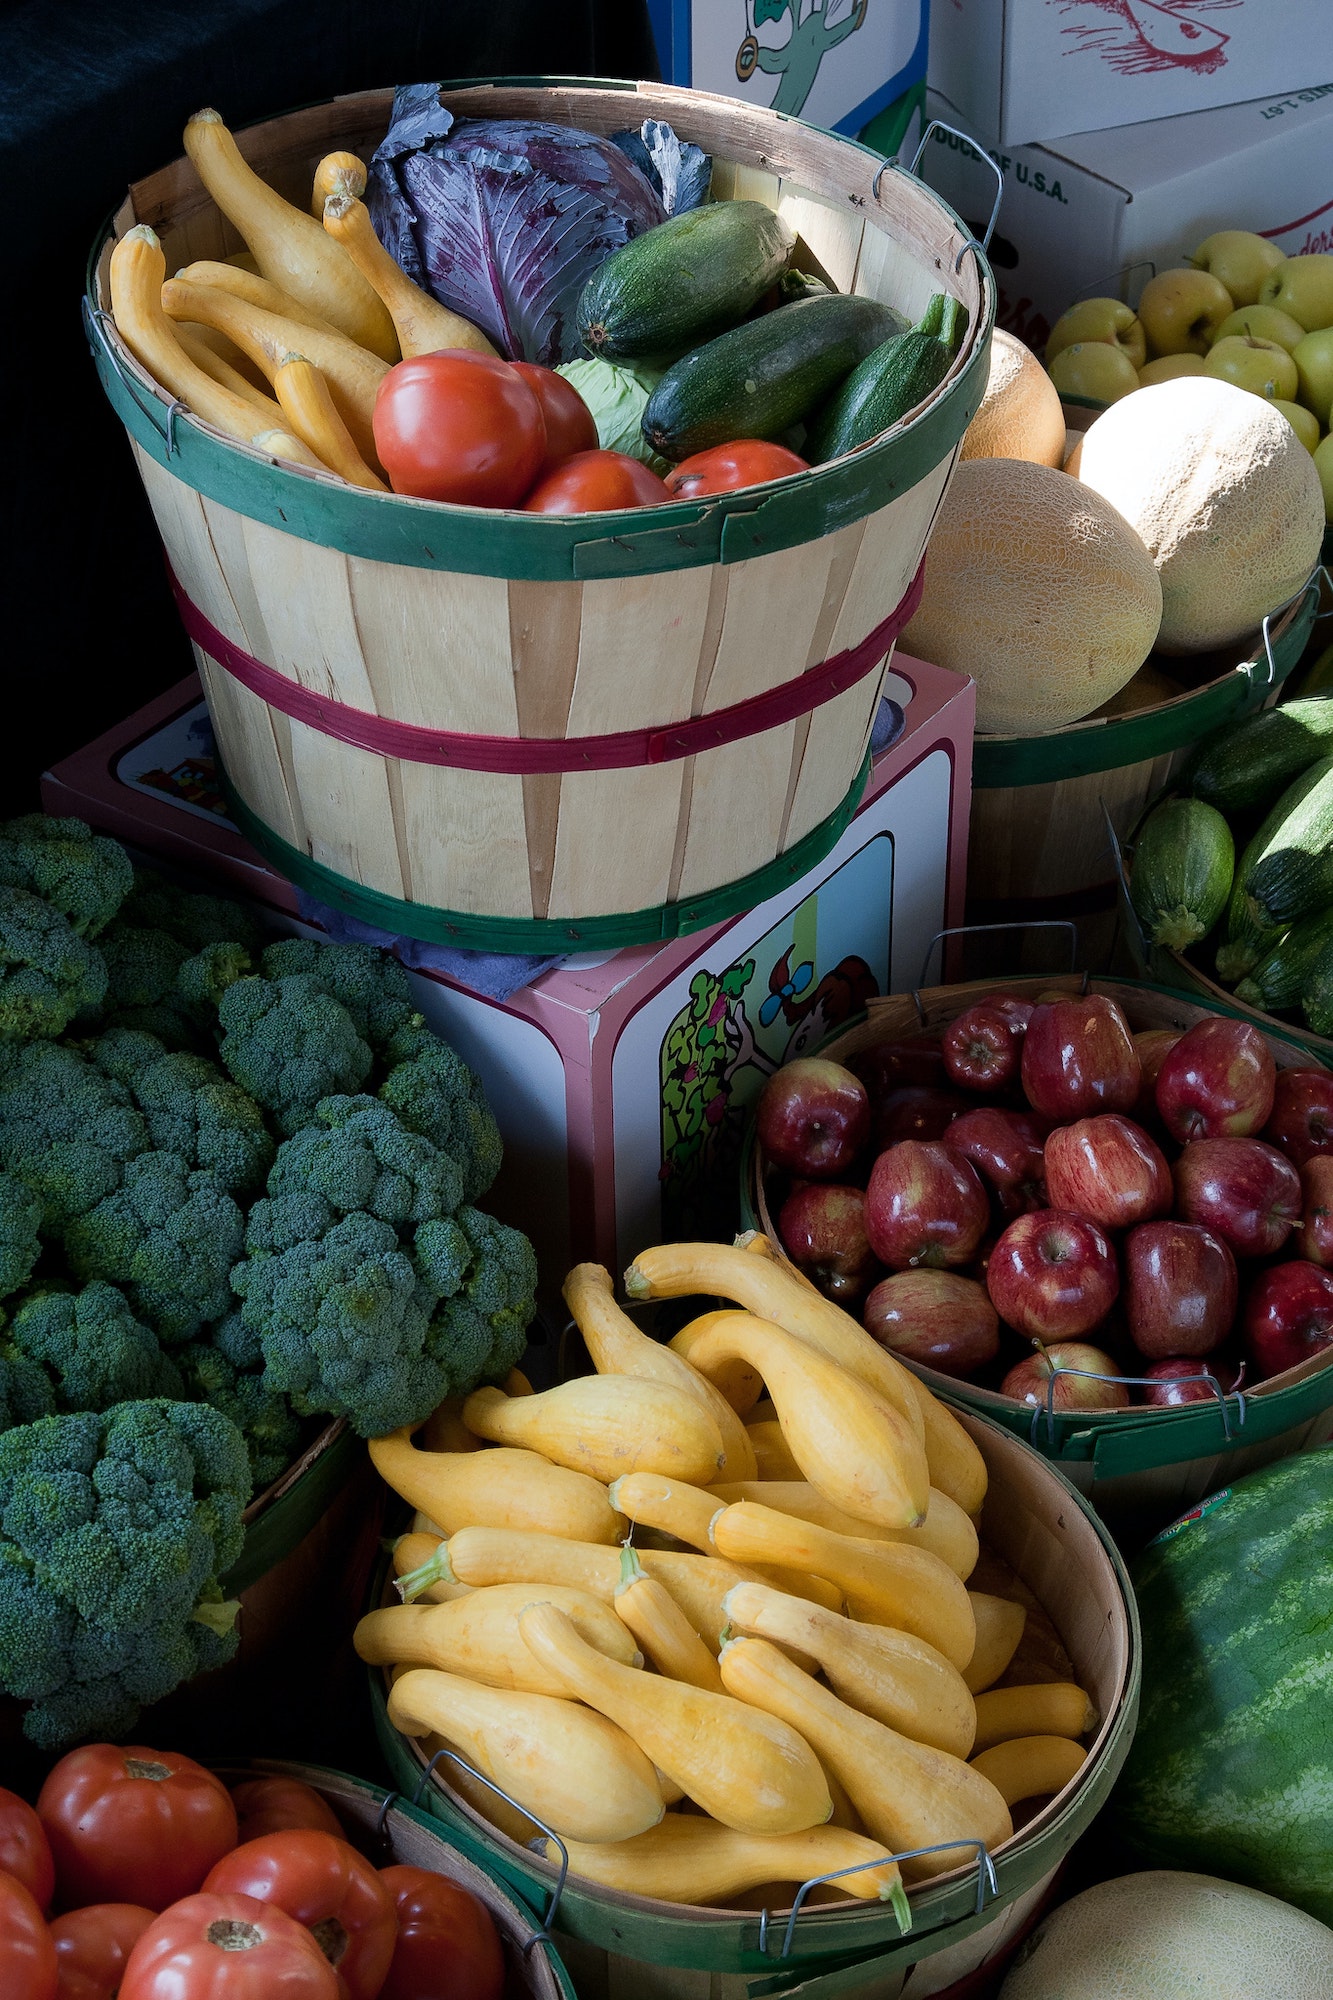 dans le cadre de la mission « Favoriser l’accès à une alimentation saine et durable pour tous », le Fonds Jacques Martel a un projet agricole !